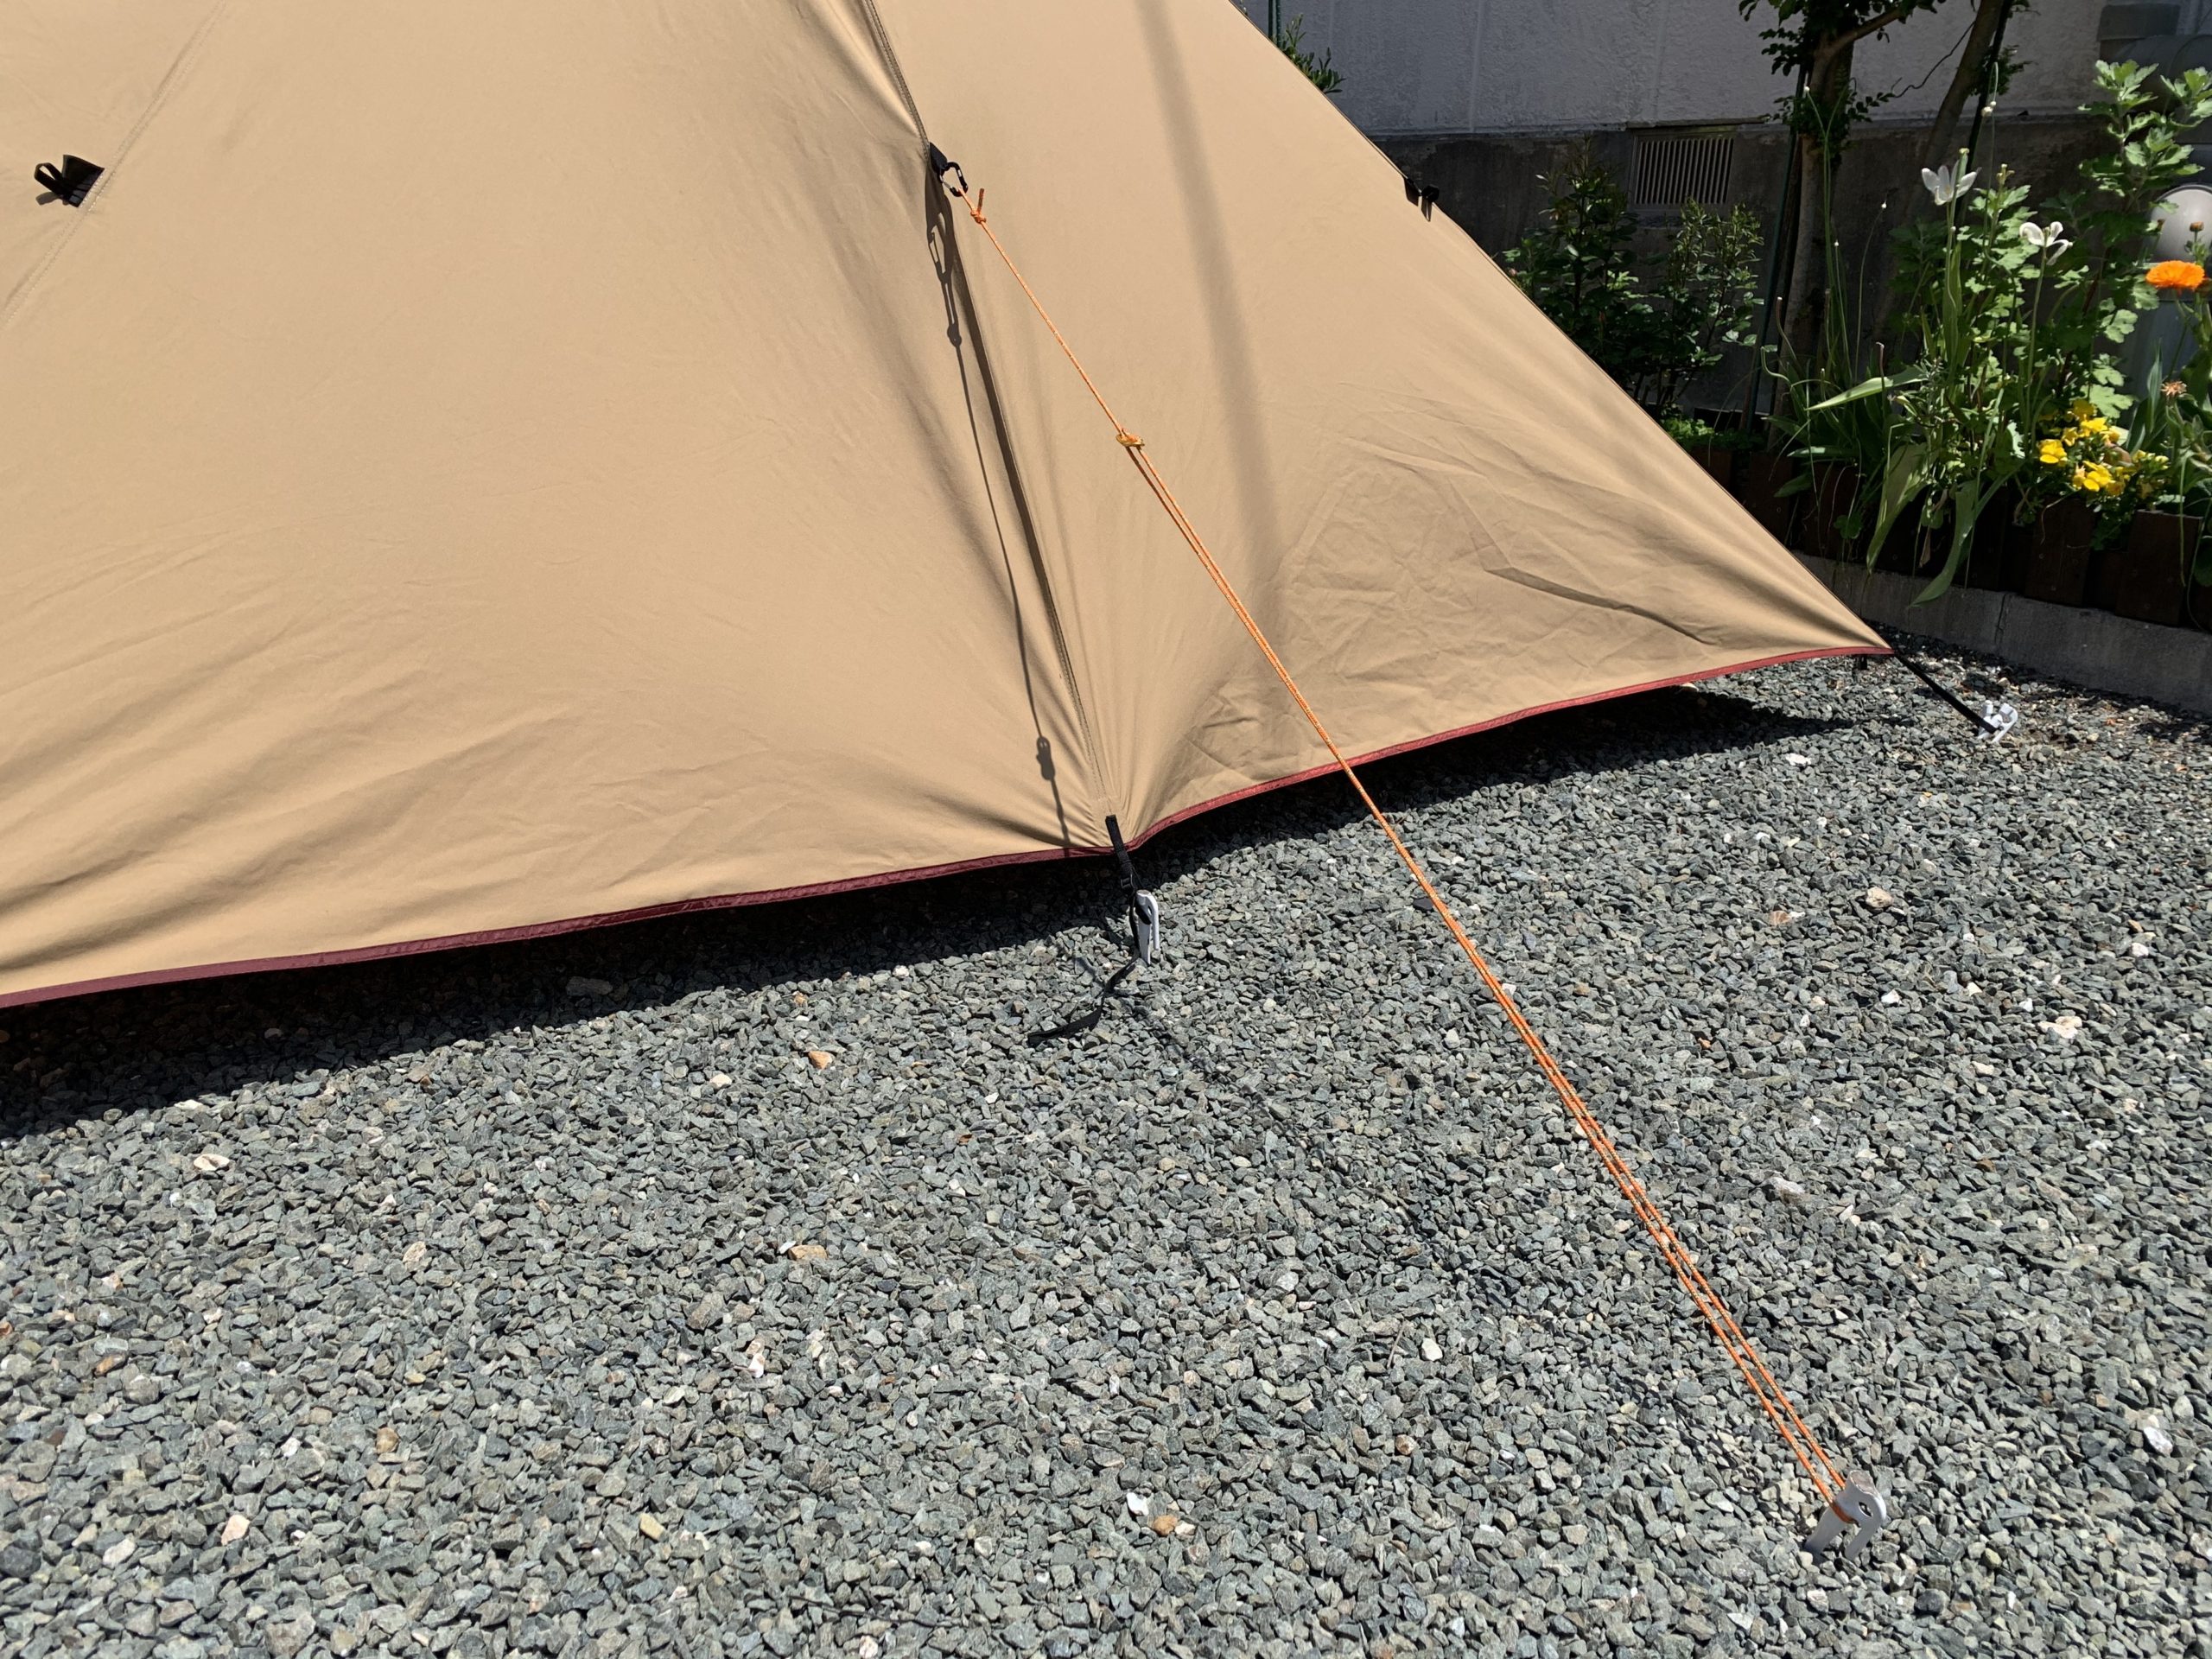 自在付きガイロープ自作とカラビナによる設営時短 | Camping Lab.